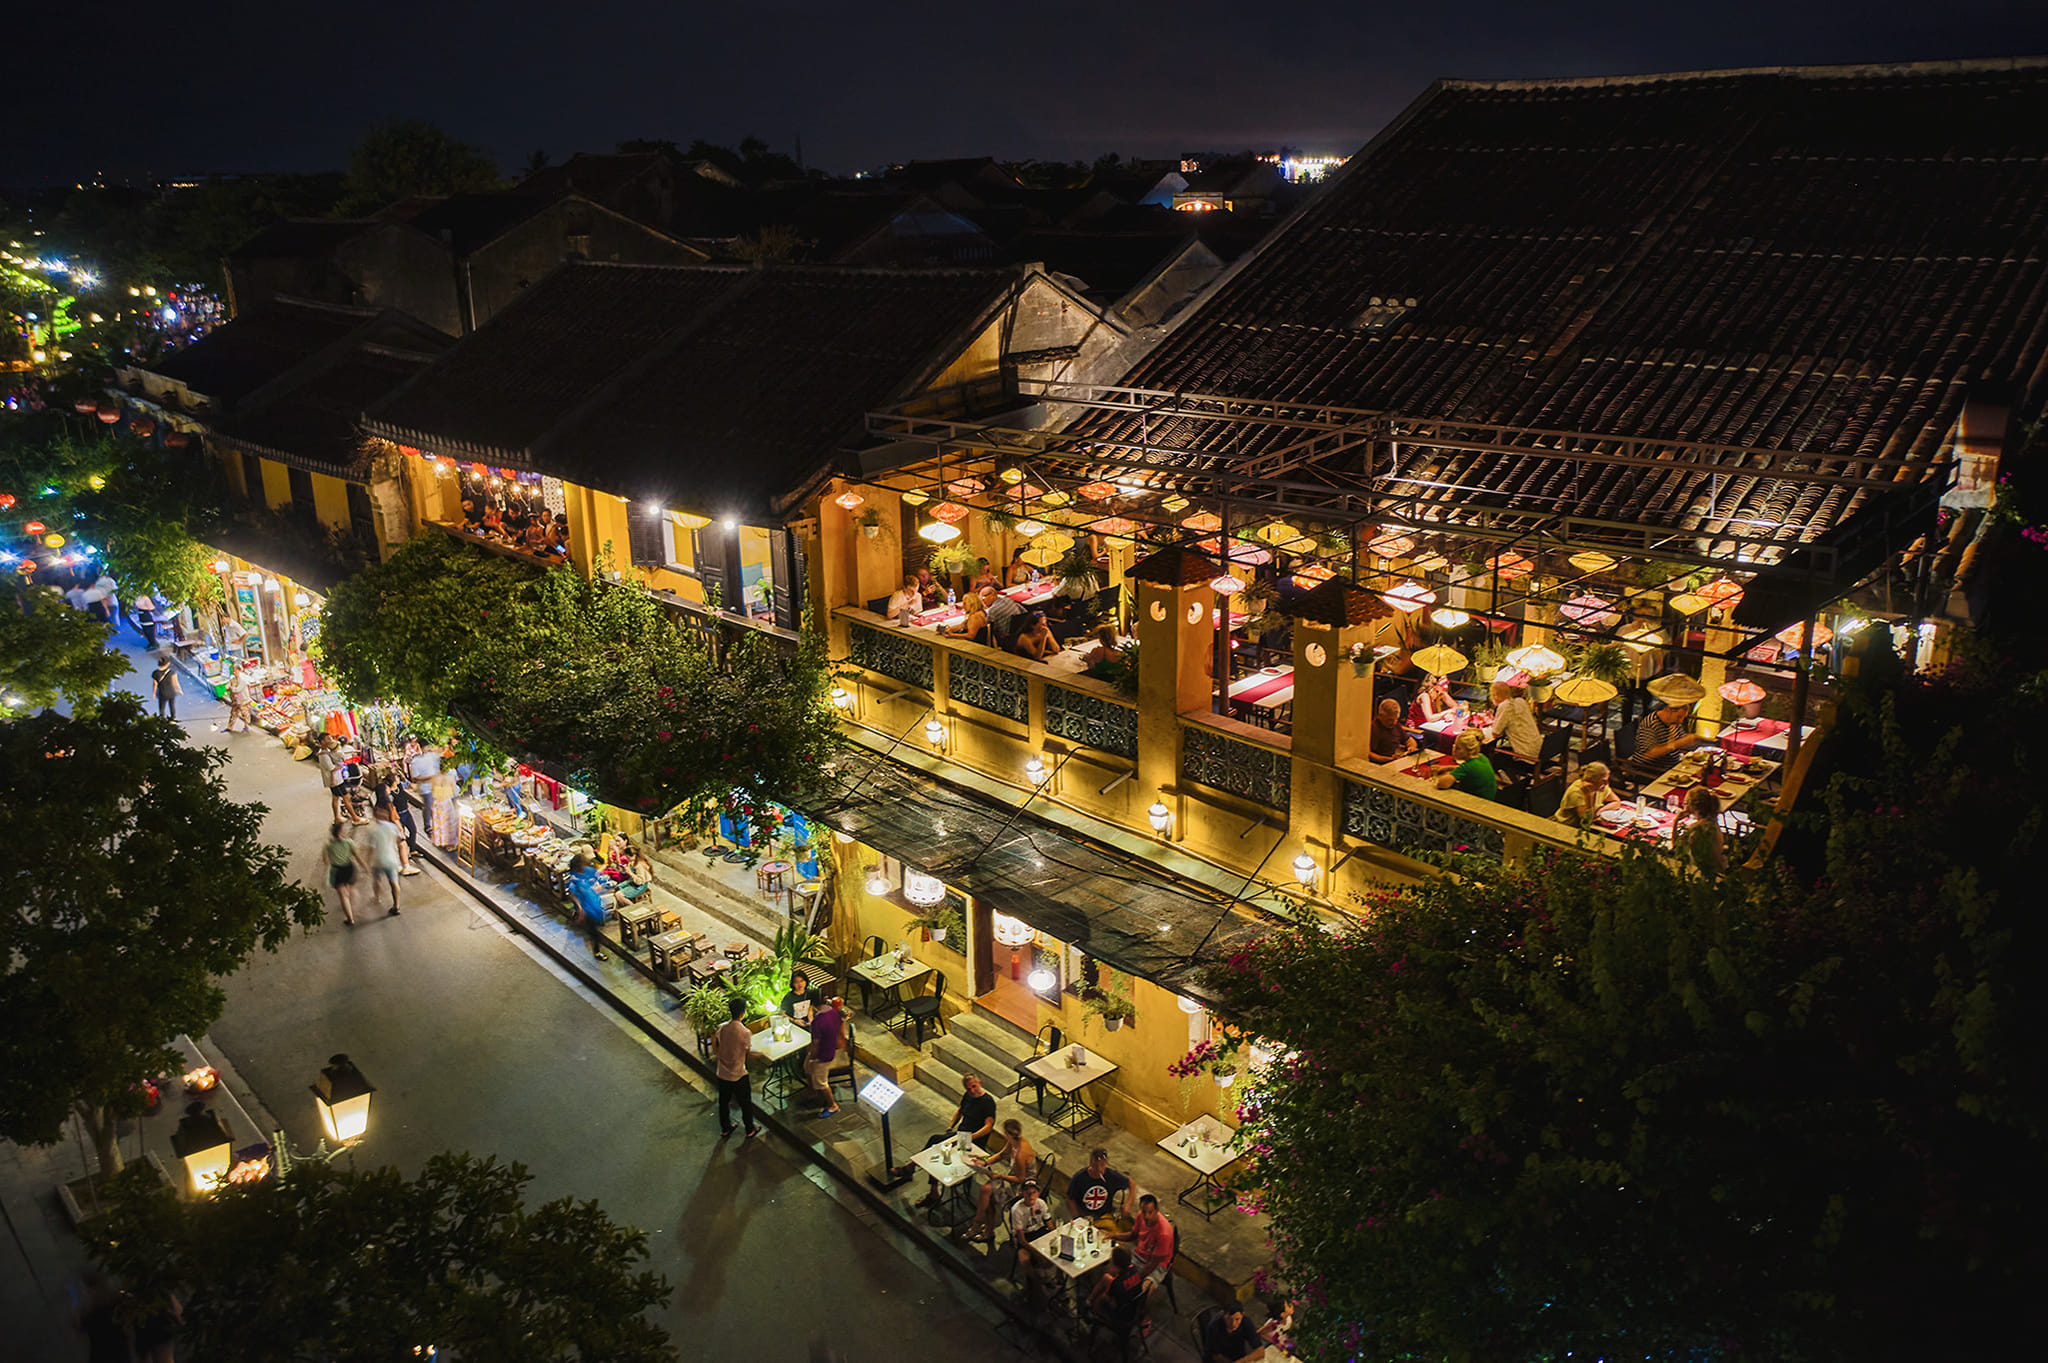 Cargo restaurant in Hoian at night